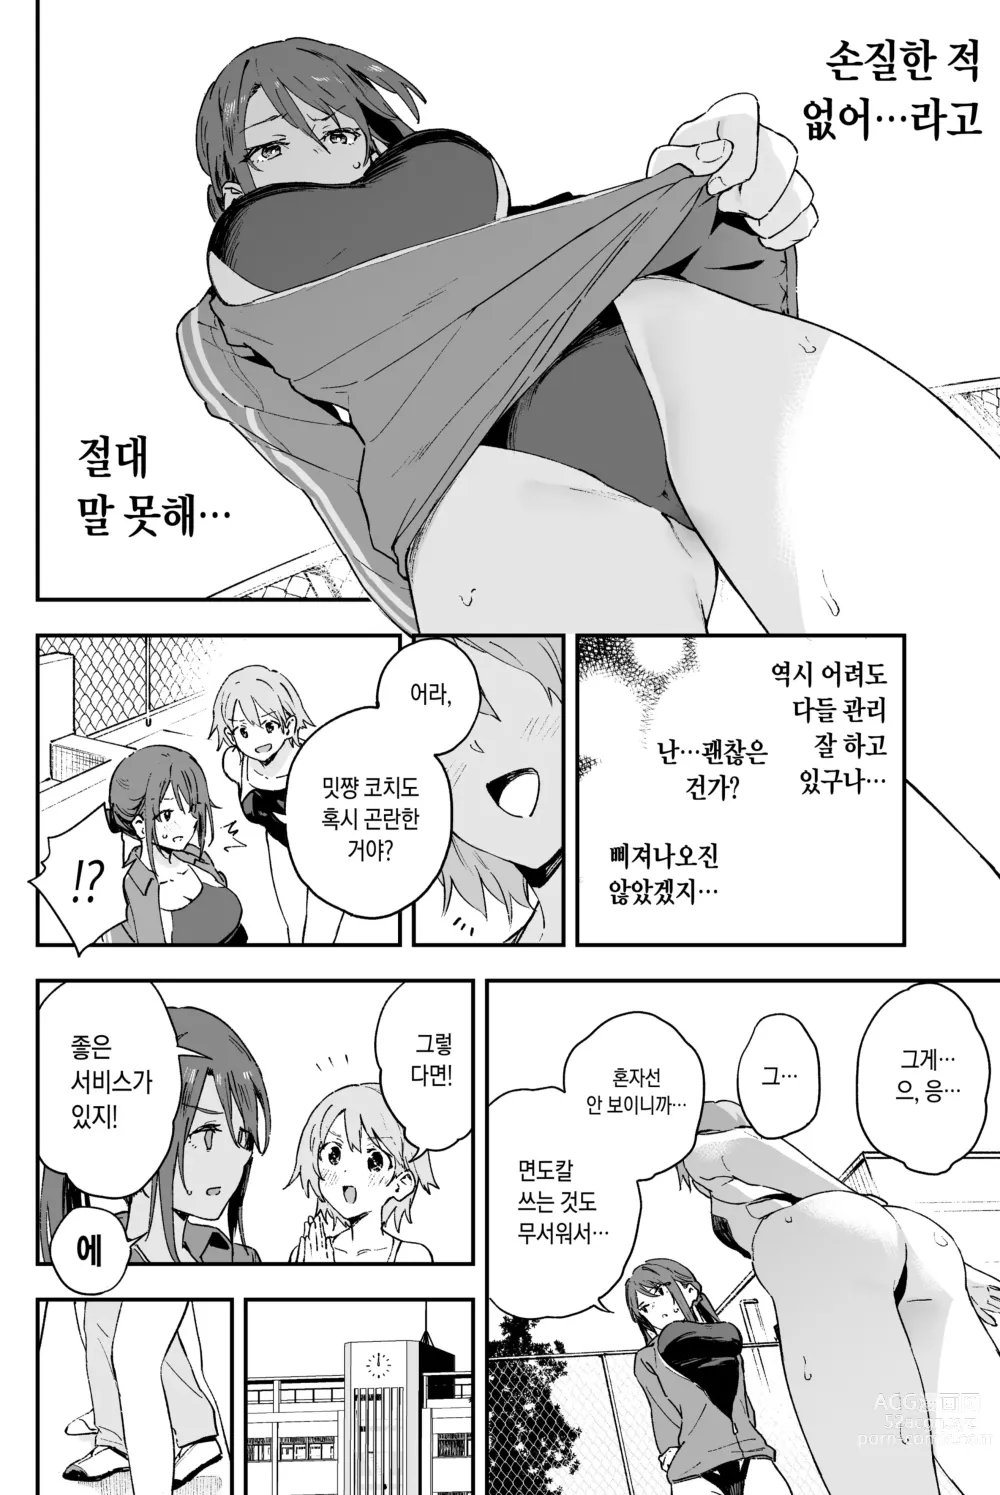 Page 4 of doujinshi 쿨한 누나에겐 누구에게도 말할 수 없는 고민이 있다.